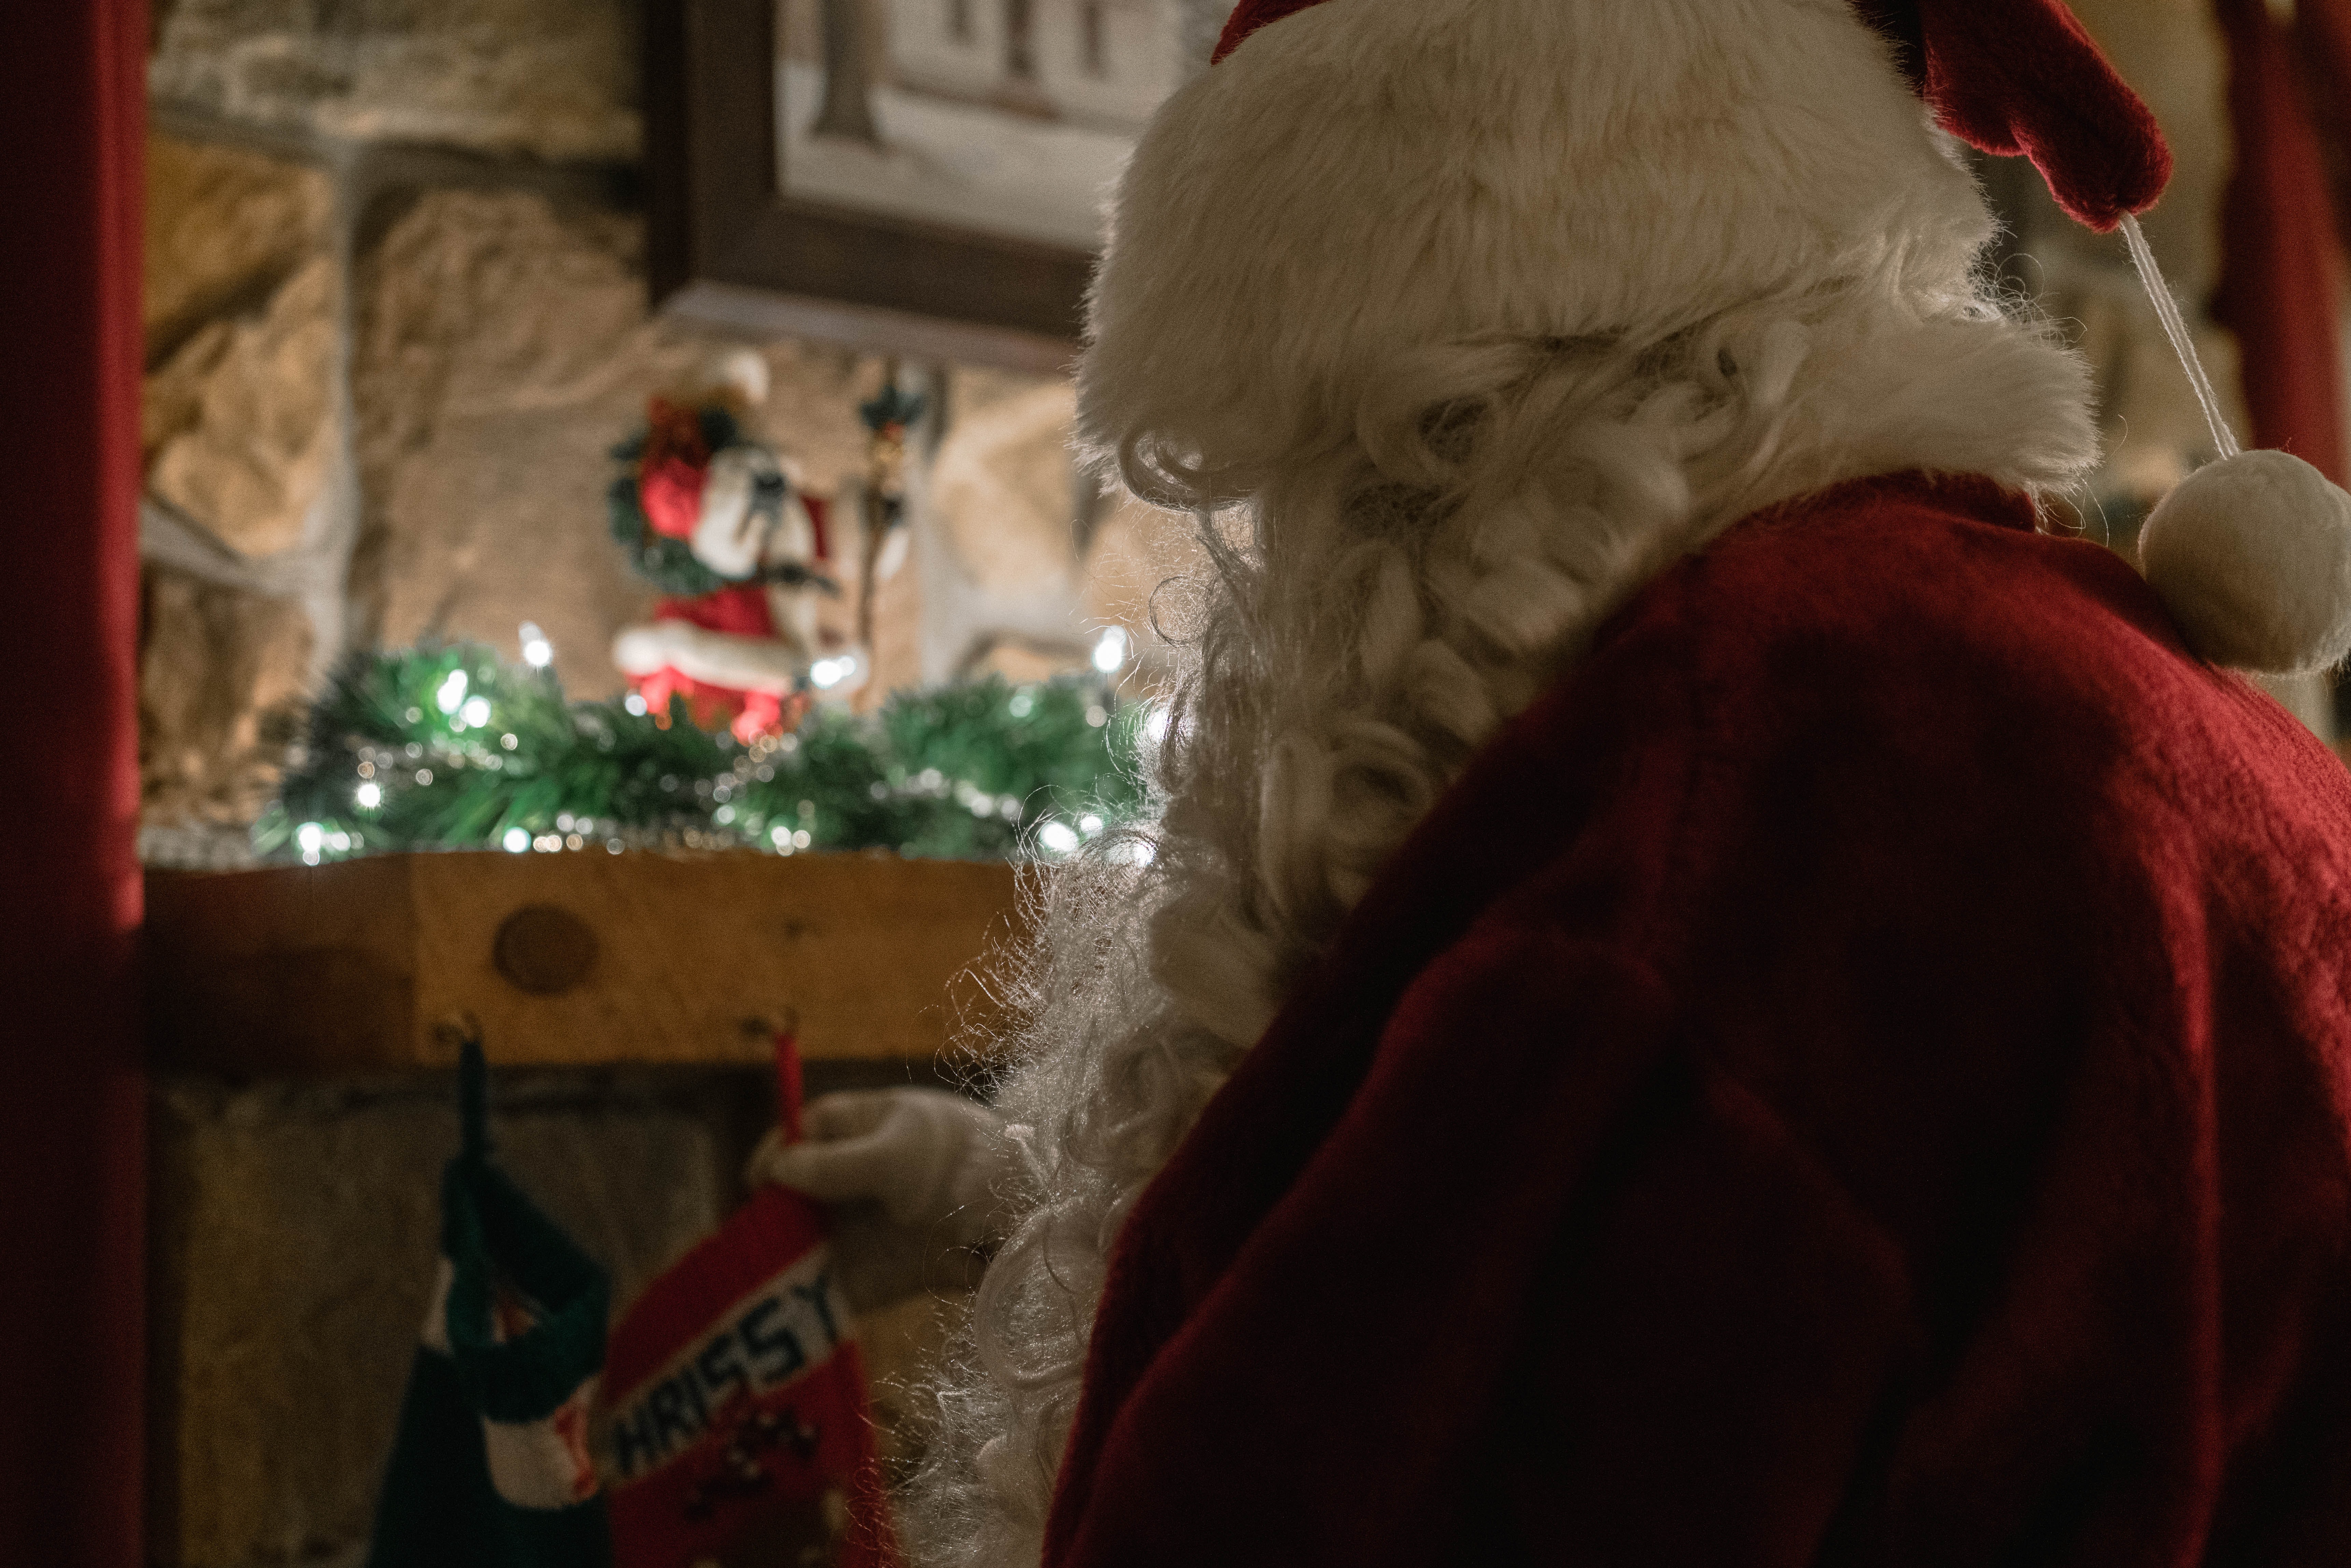 Comment Dit On Père Noël En Anglais Ecrire la lettre au Père Noël en anglais